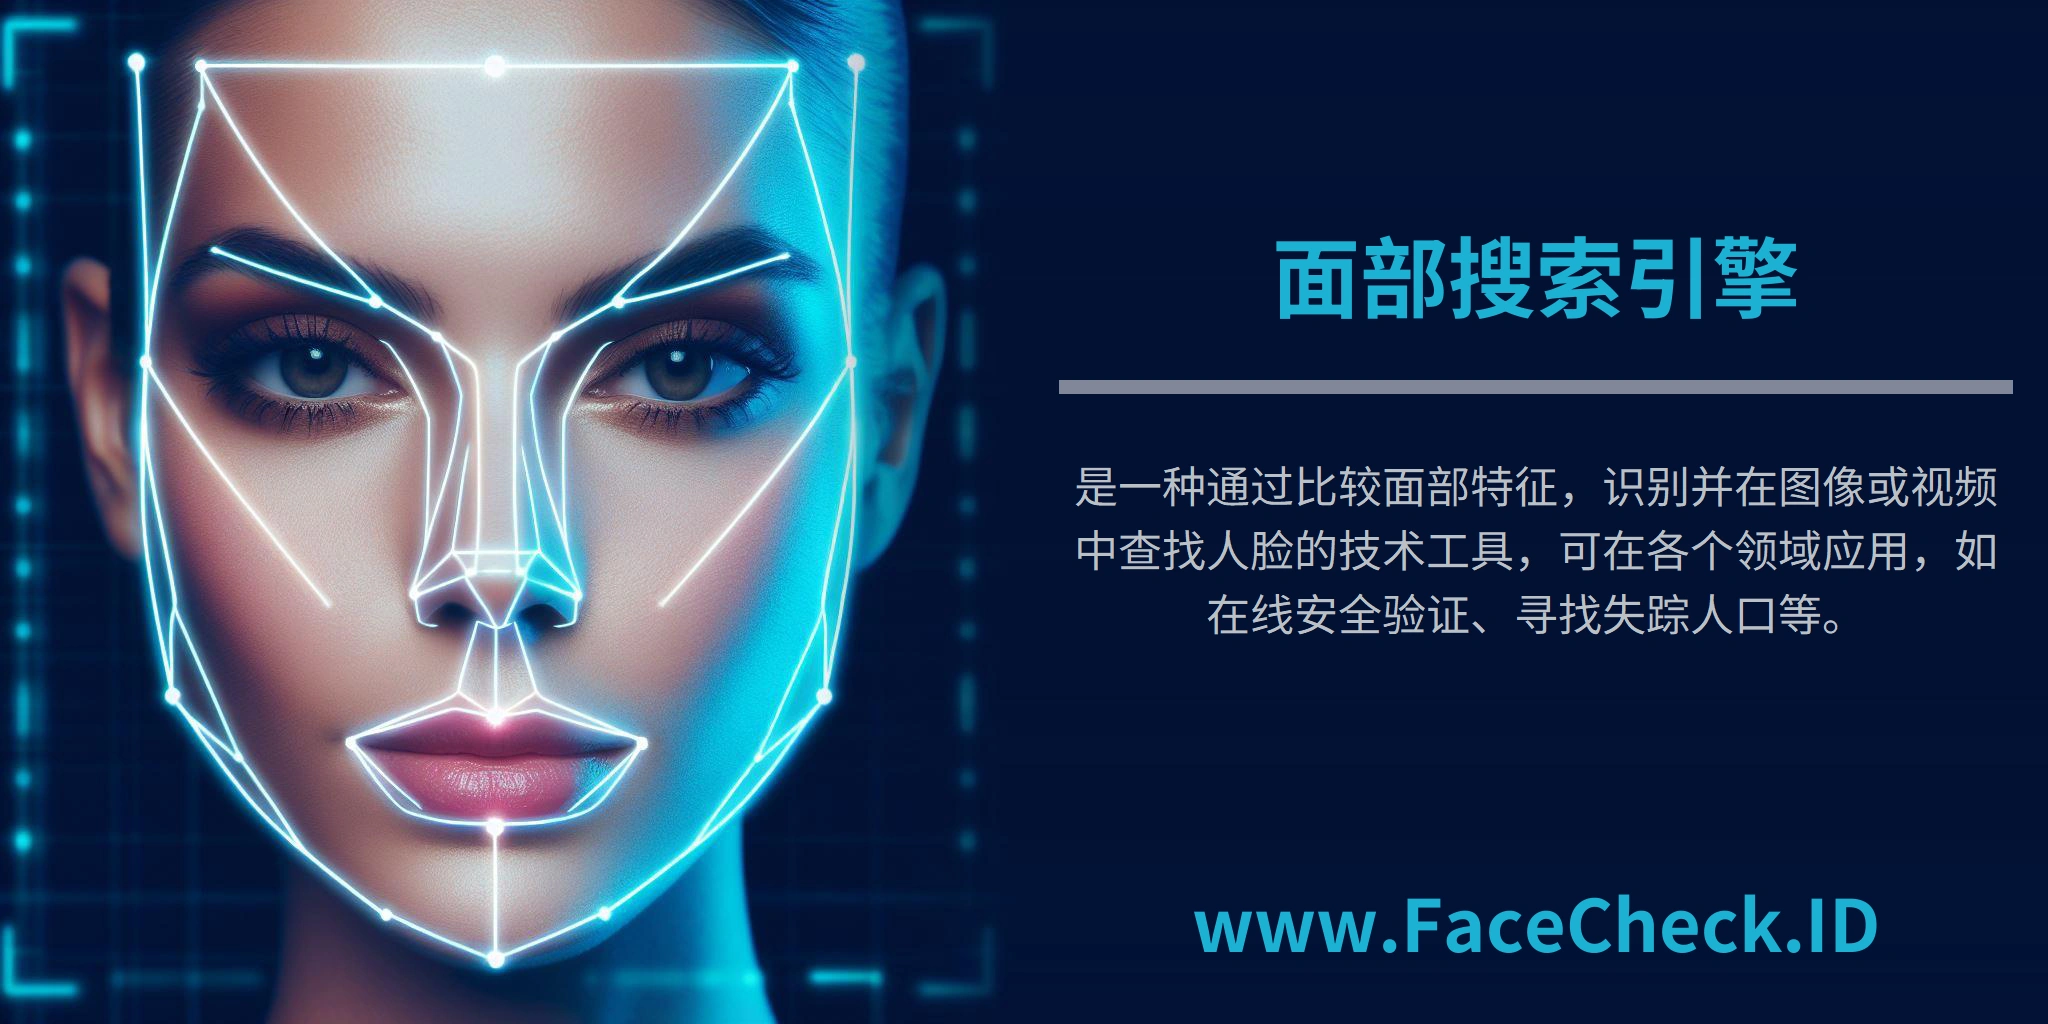 <b>面部搜索引擎</b>是一种通过比较面部特征，识别并在图像或视频中查找人脸的技术工具，可在各个领域应用，如在线安全验证、寻找失踪人口等。